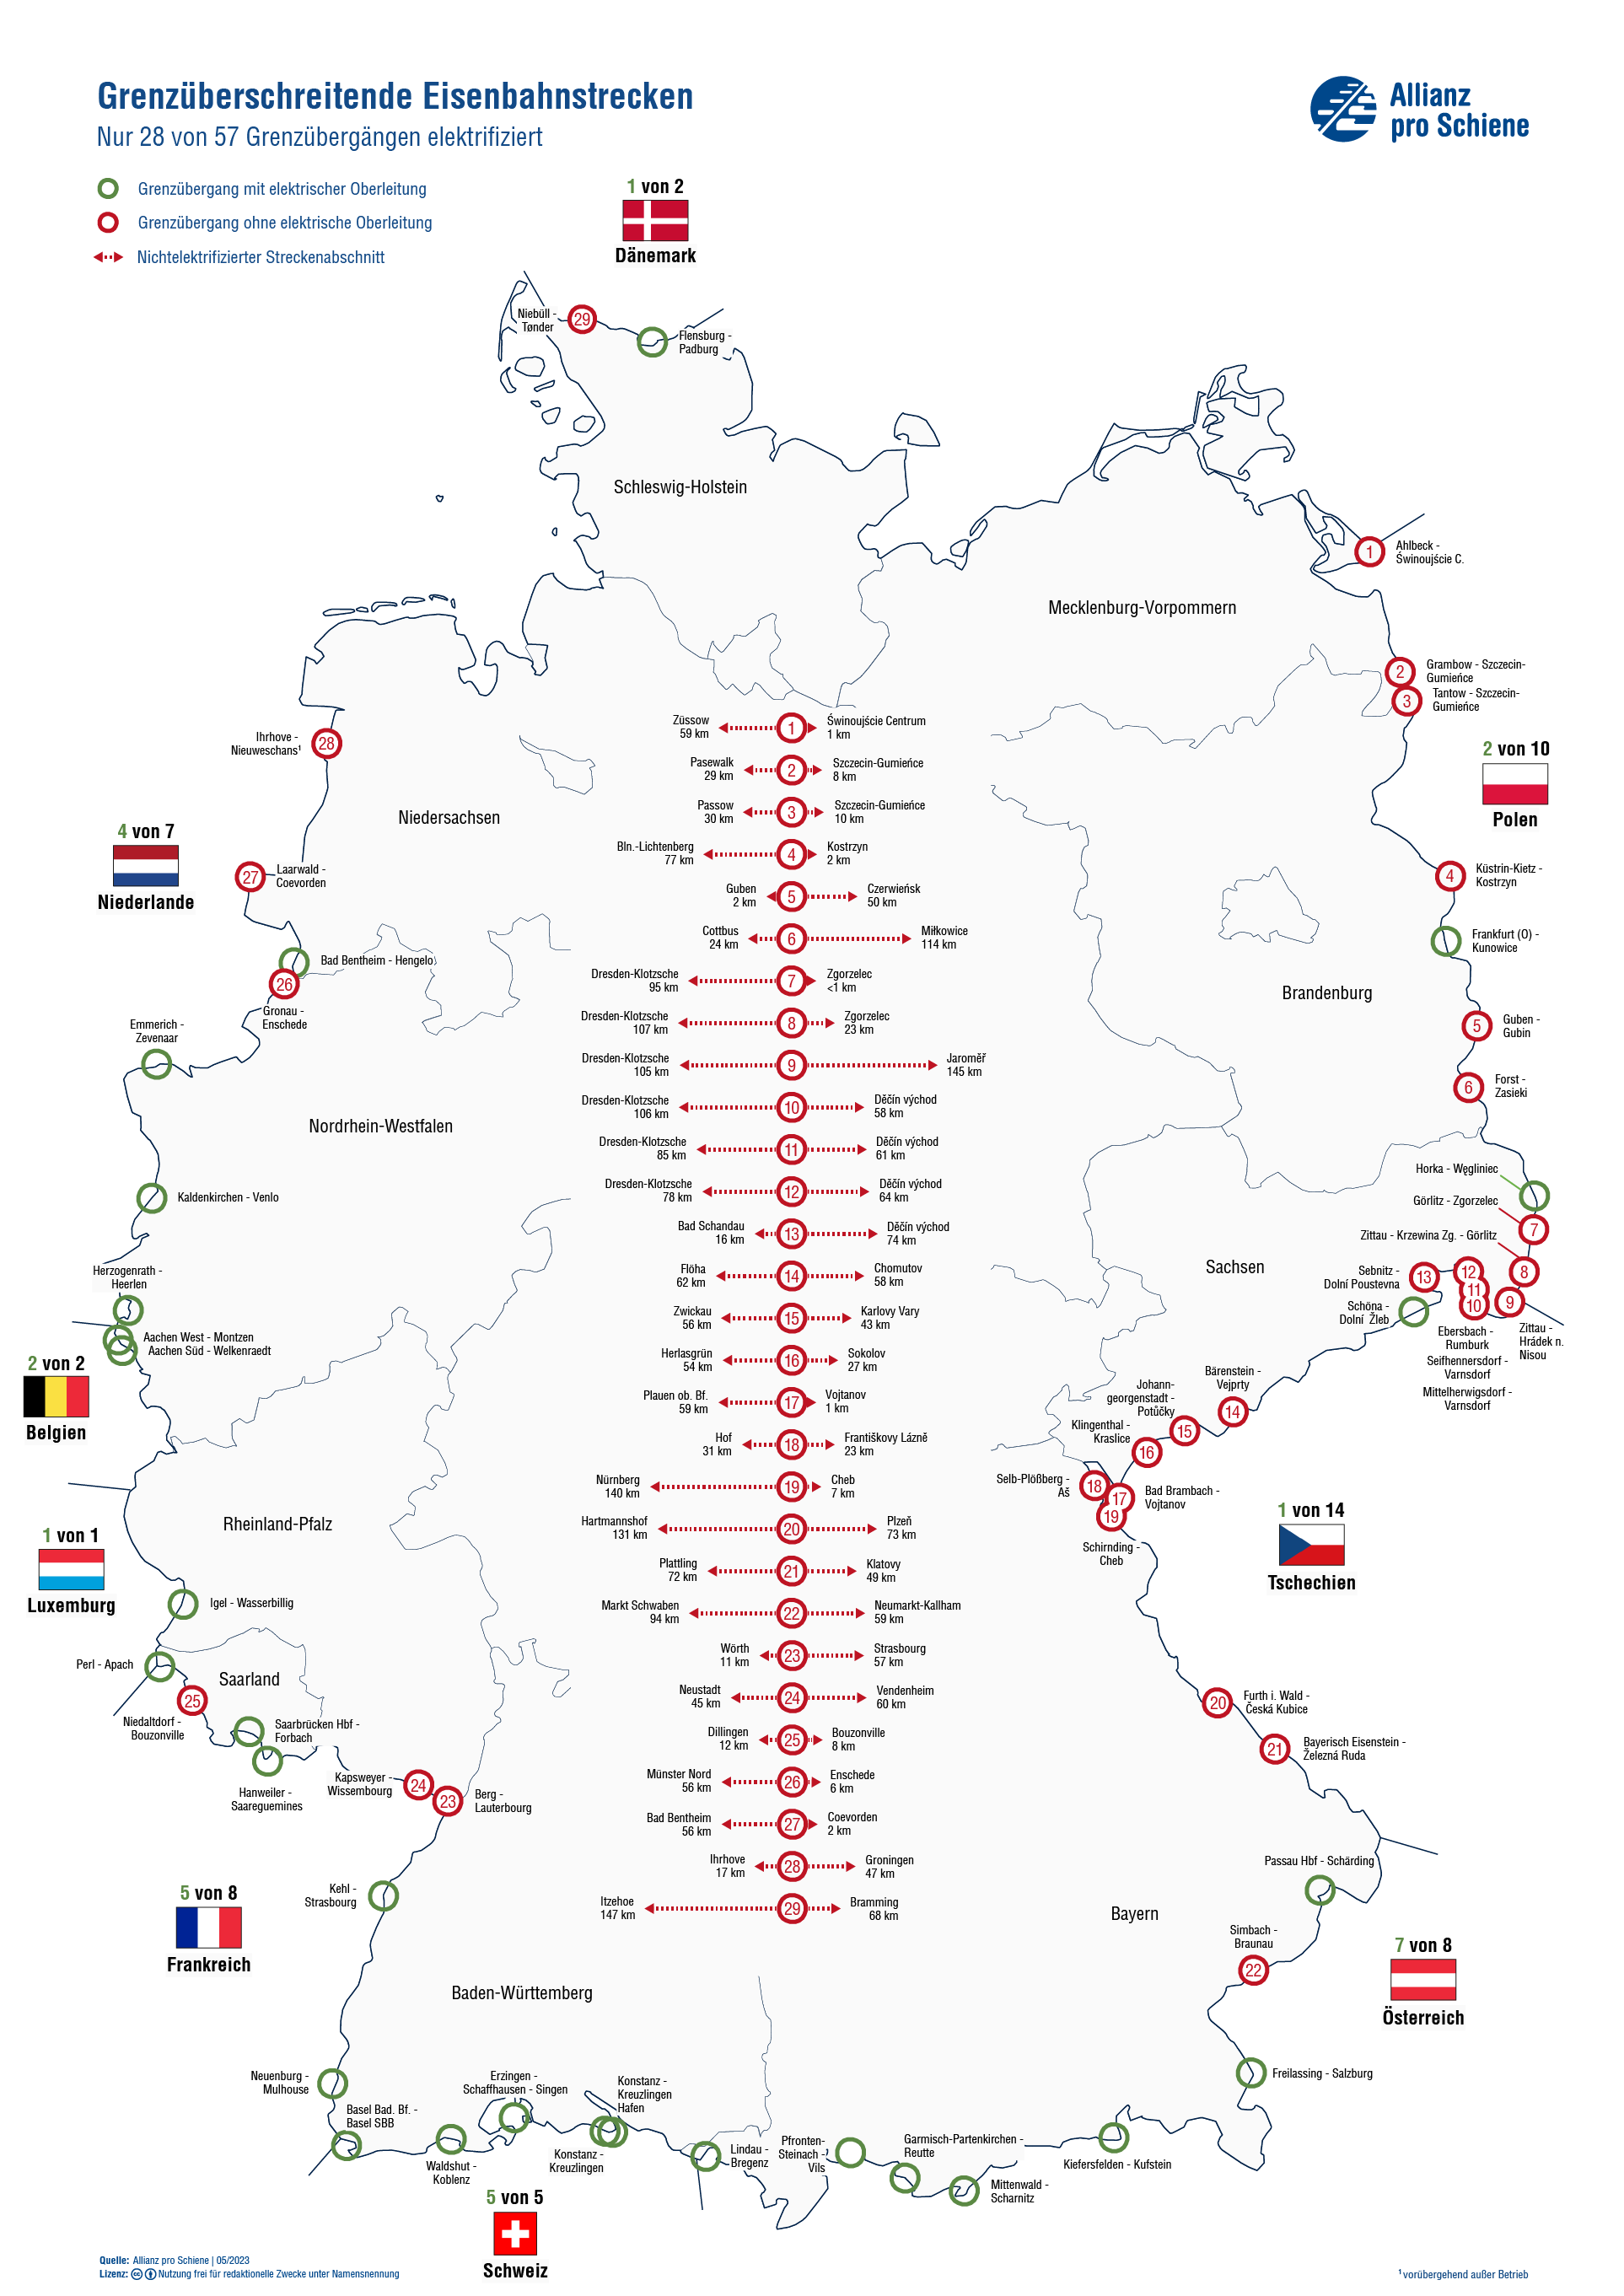 Eine Übersicht der grenzüberschreitenden Eisenbahnstrecken Deutschlands. und deren Elektrifizierungsgrad